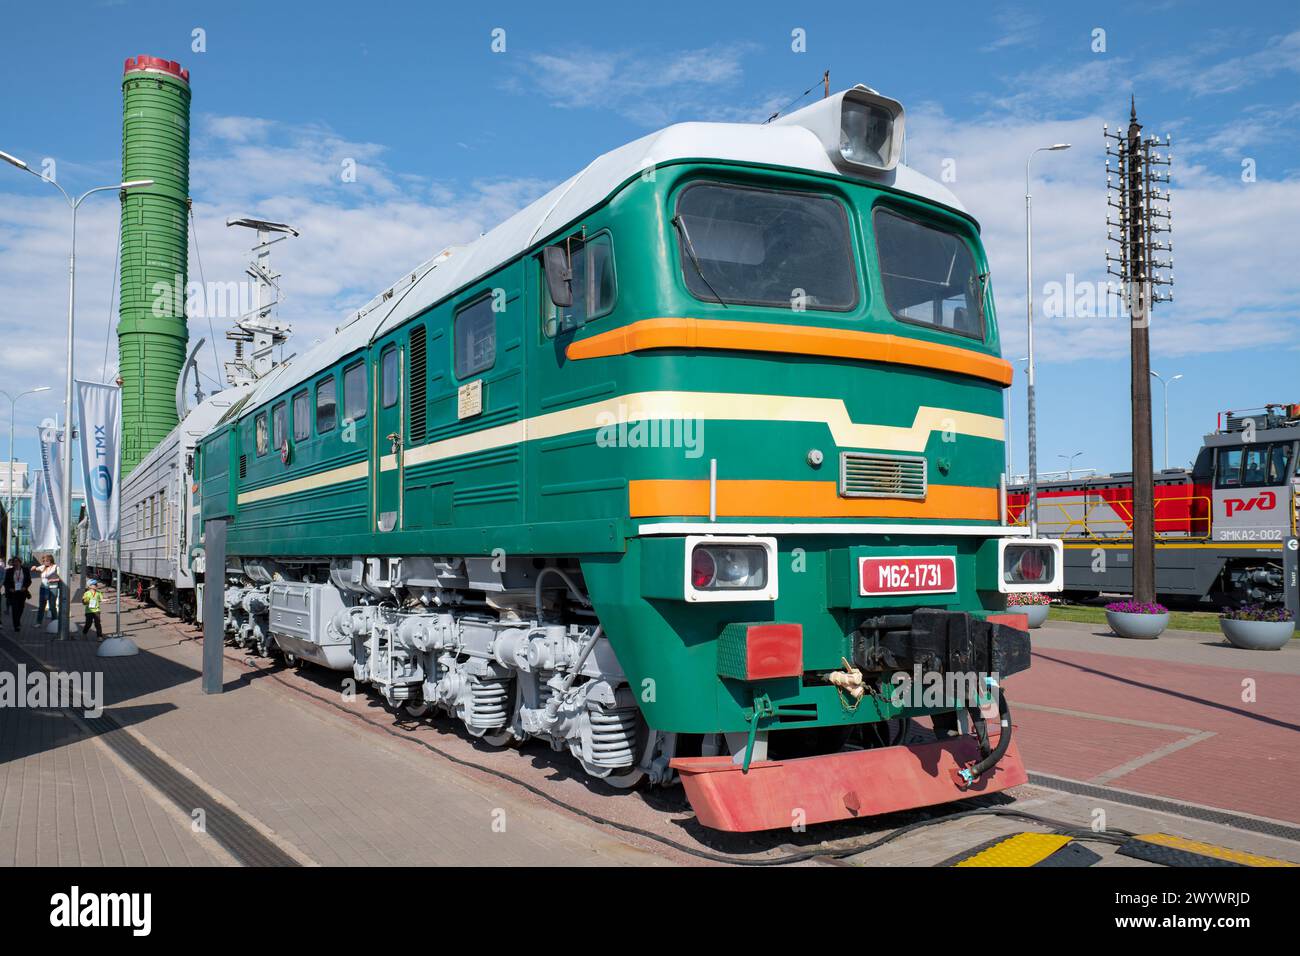 SANKT PETERSBURG, RUSSLAND - 27. AUGUST 2023: Diesellokomotive M62 des Kampfbahnraketensystems 15P961 'Molodets' an einem sonnigen Tag. Russische Eisenbahn Stockfoto